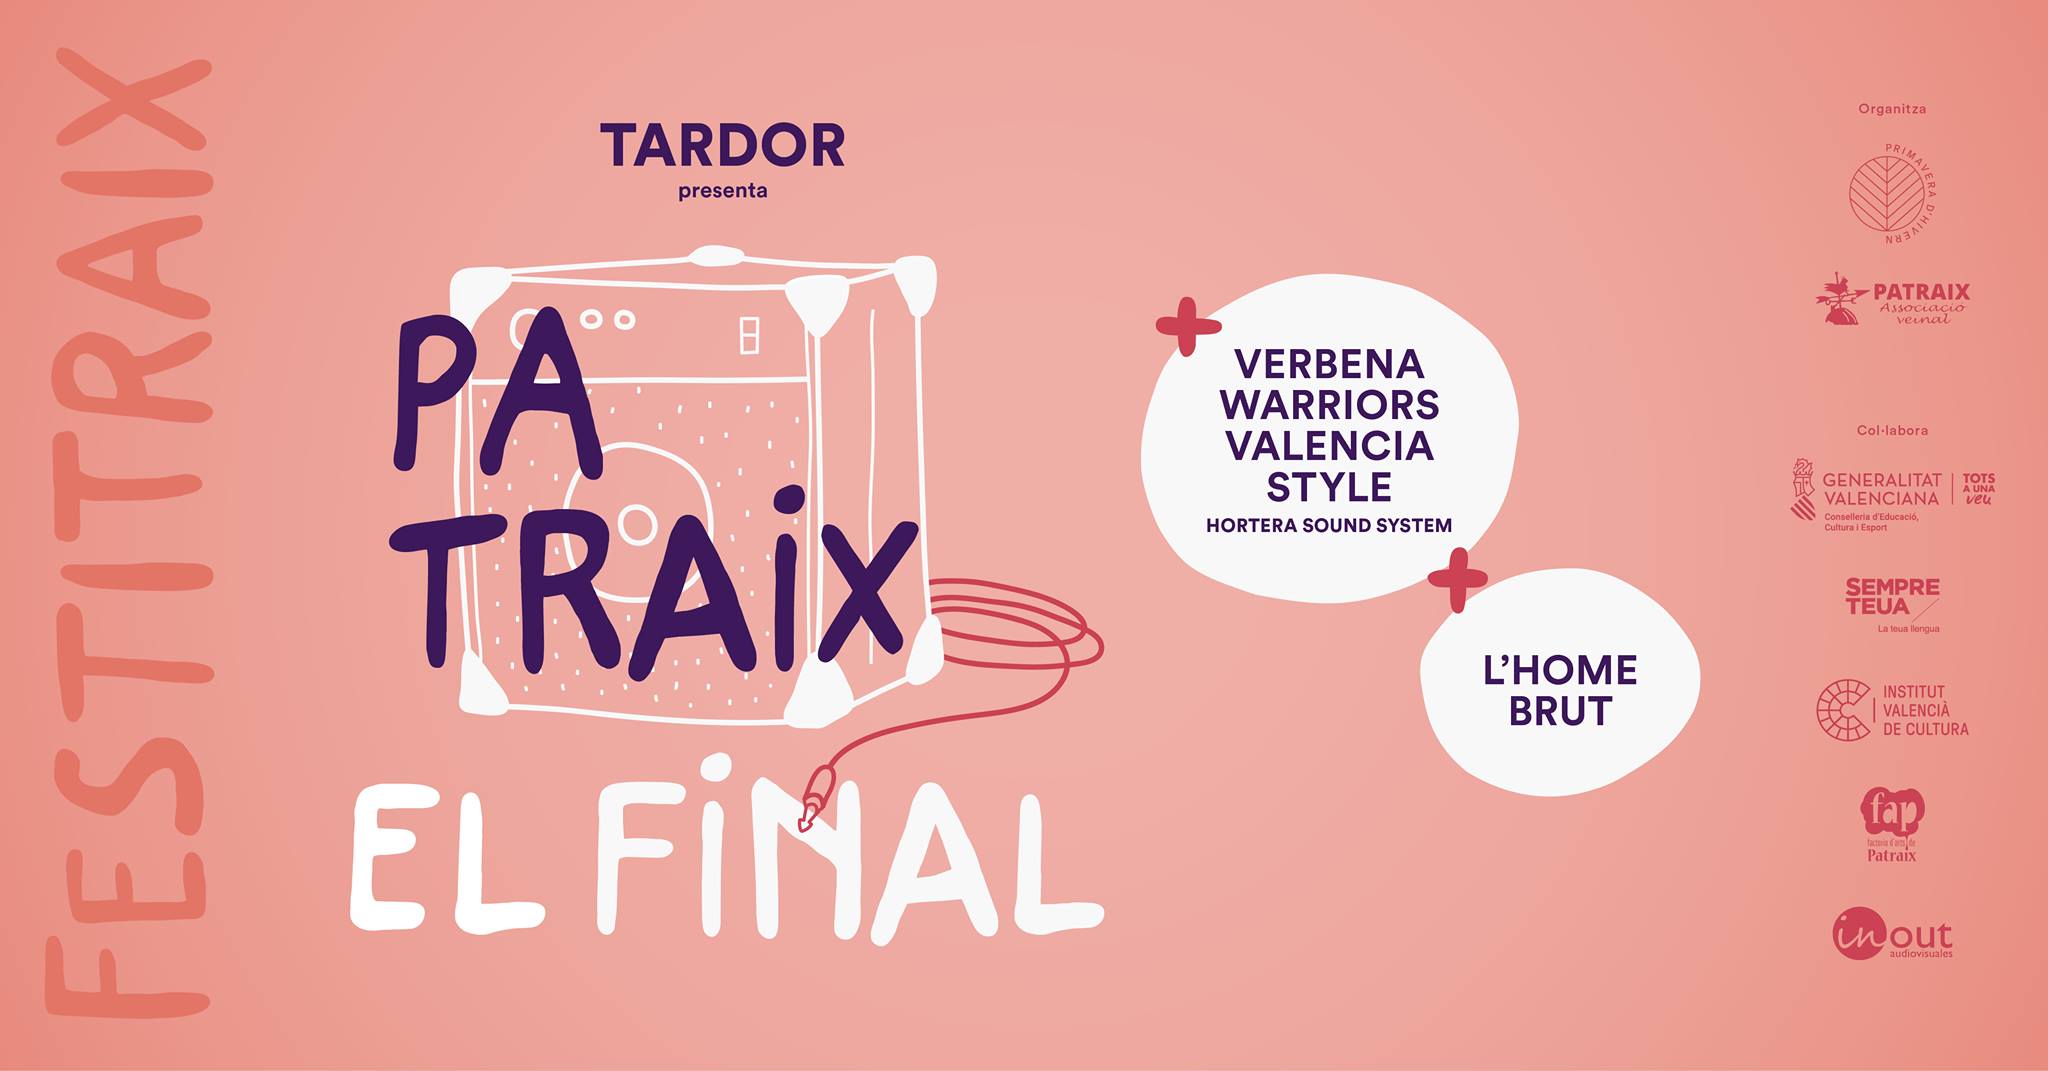 Tardor finaliza mañana la gira del disco Patraix dentro del Festitraix